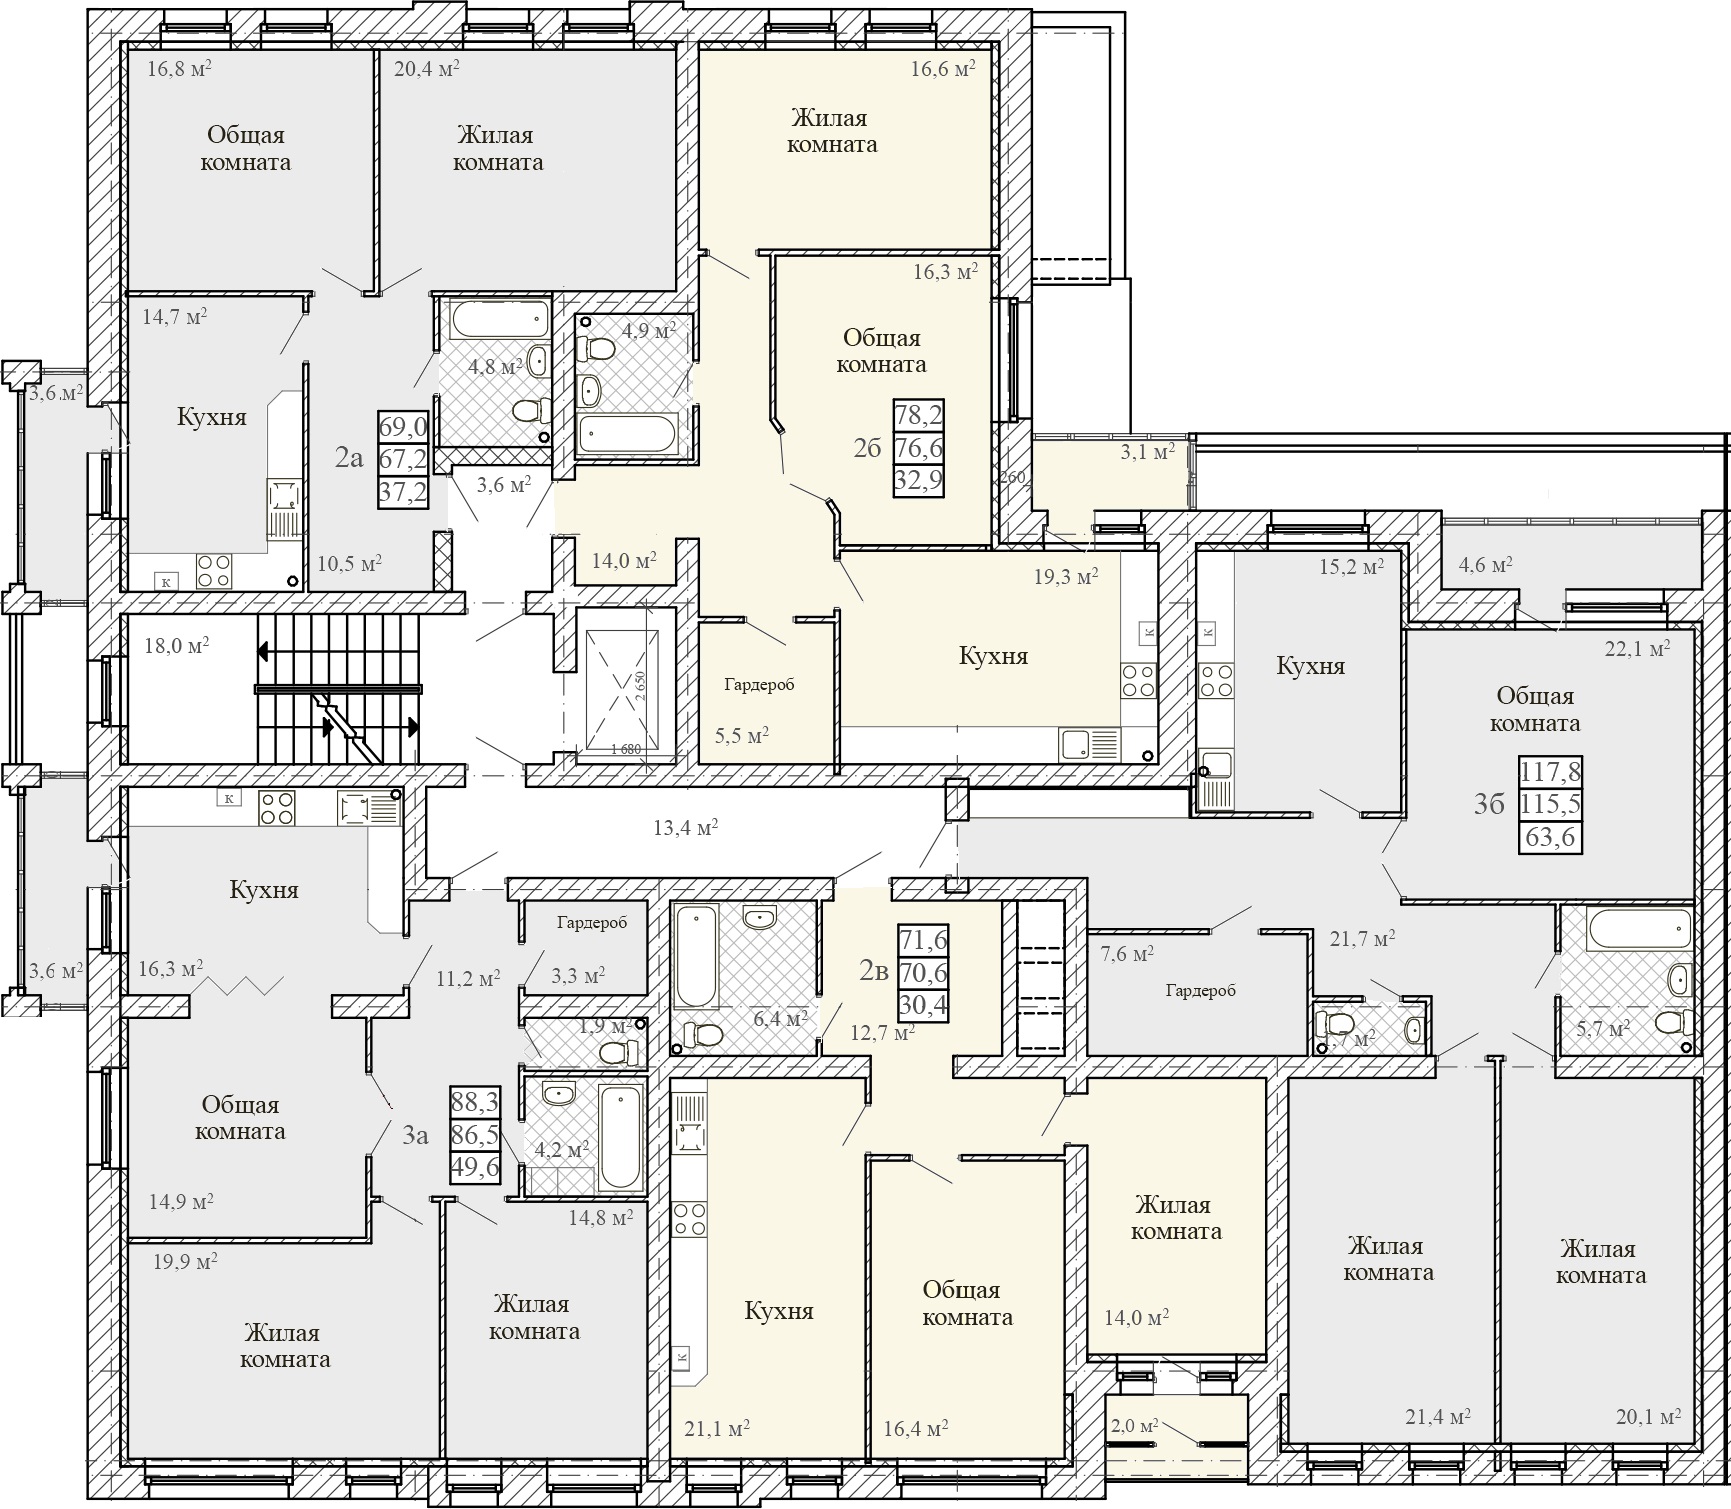 Сколько квартир в 1 подъезде. 4 Квартиры на этаже планировка. Планировка квартир в подъезде. Секционный 2 квартирный дом. План расположения квартиры на этаже.